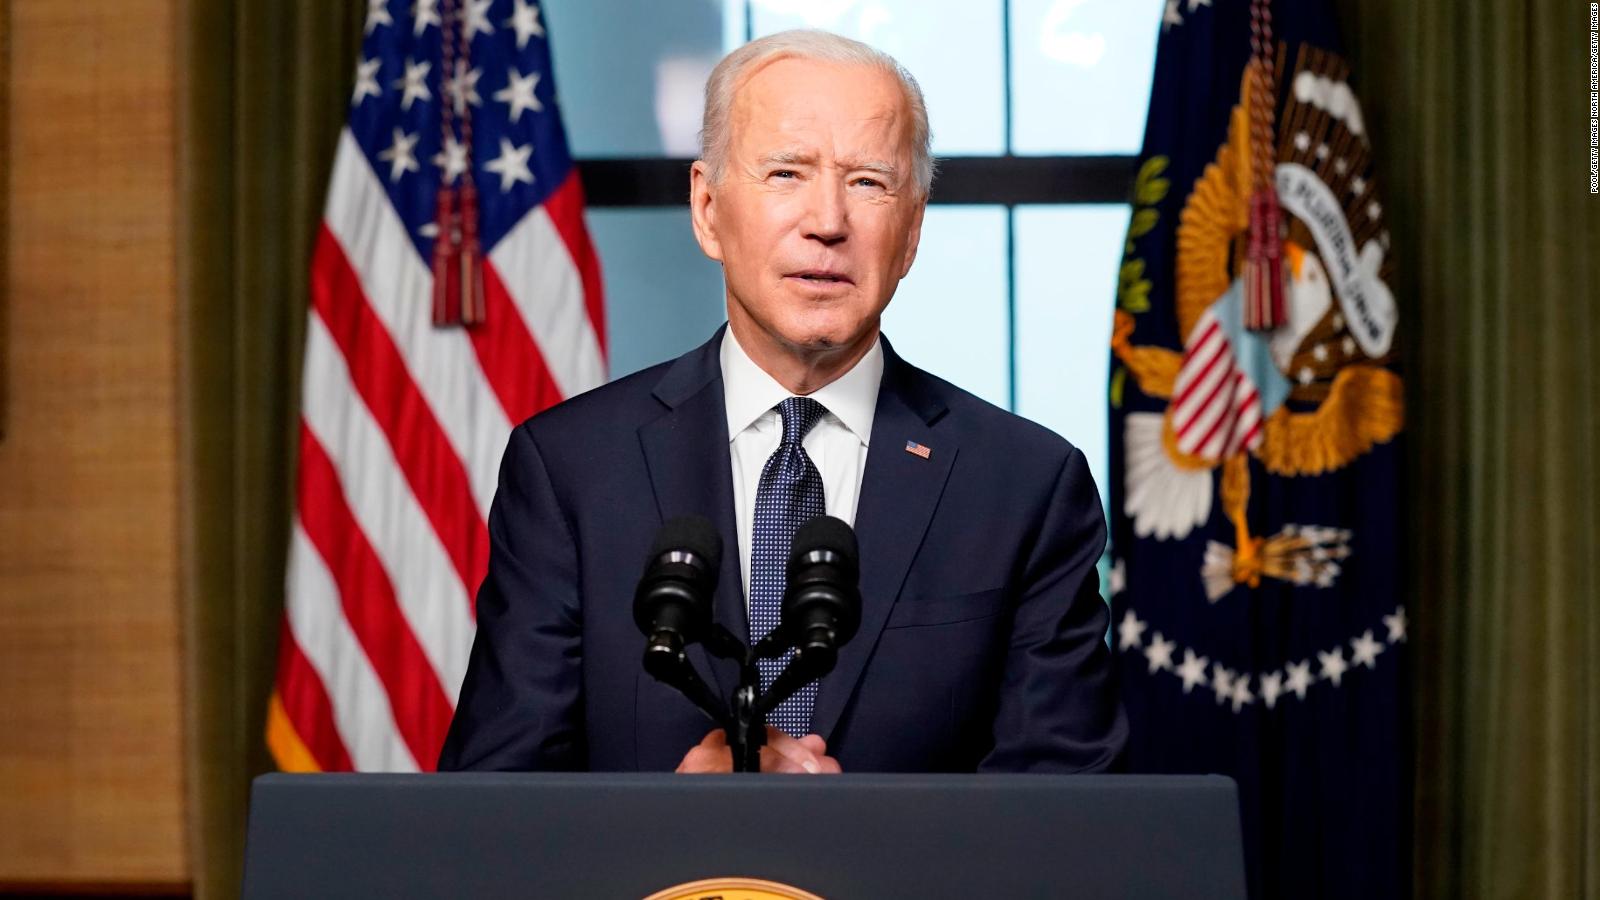 Joe Biden's full speech: US to withdraw troops from Afghanistan - CNN Video